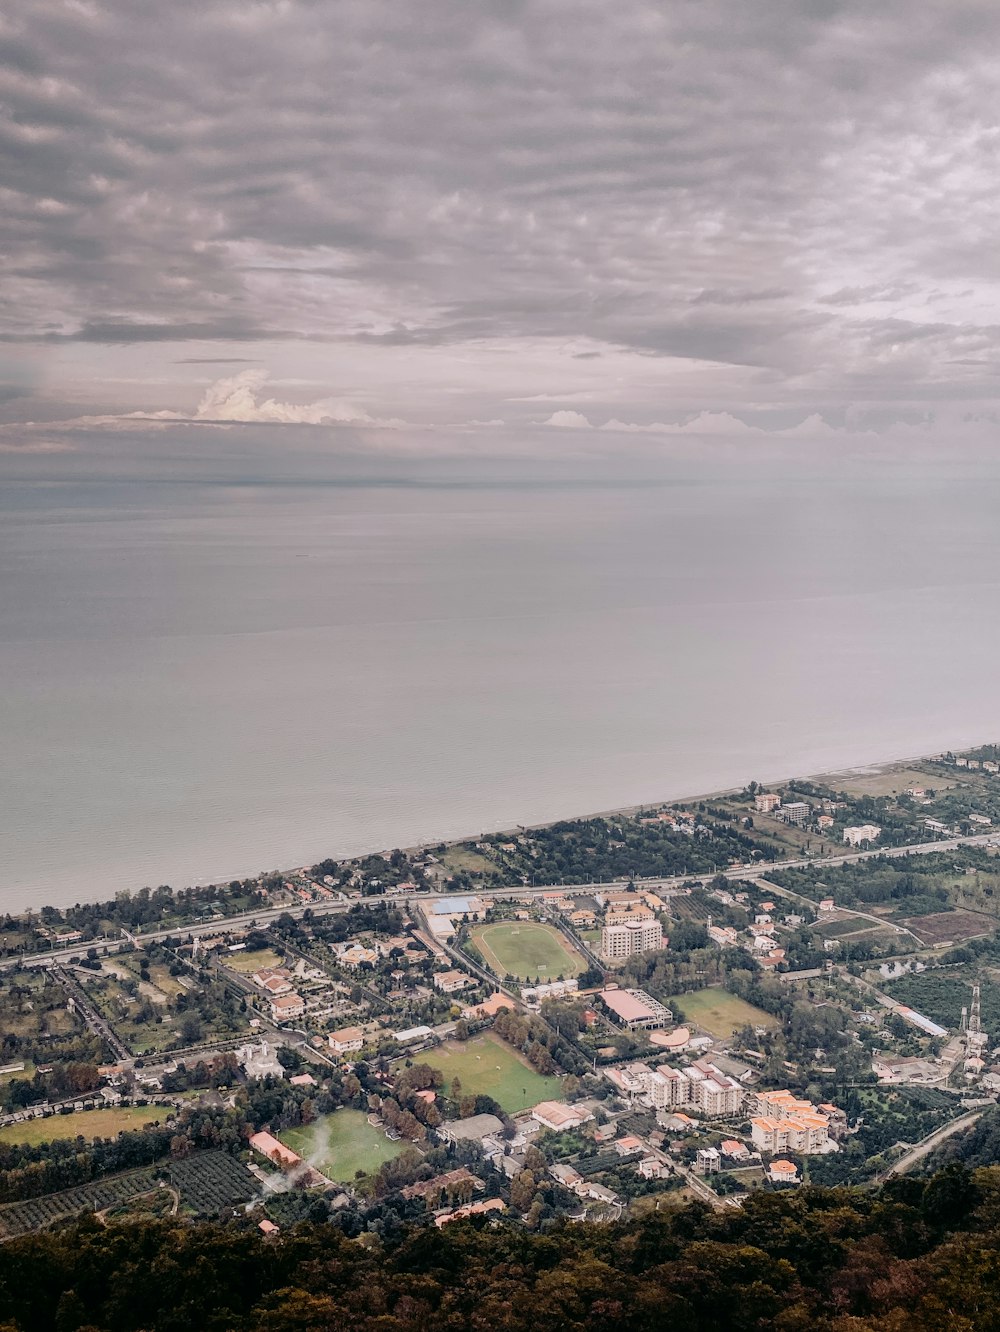 Luftbild des Stadtbildes in der Nähe des Meeres